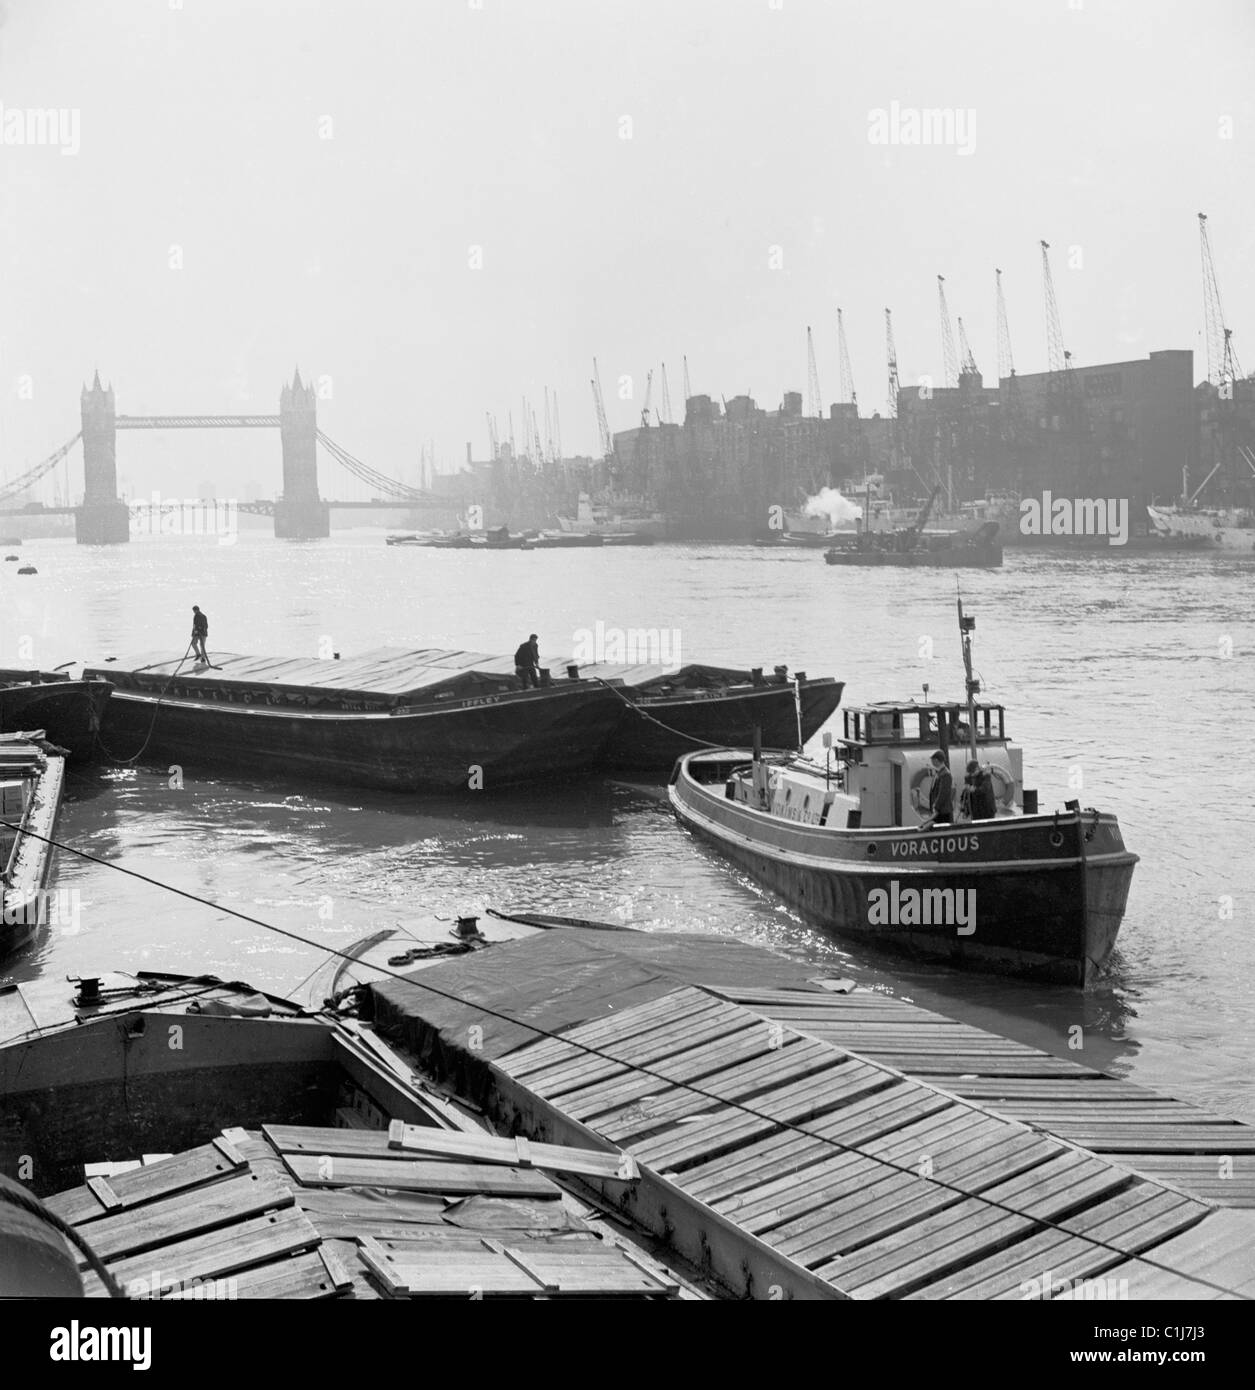 Londra, 1950s. Fotografia di J Allan contanti di una chiatta di lavoro sul Fiume Tamigi, con il Tower Bridge in distanza. Foto Stock